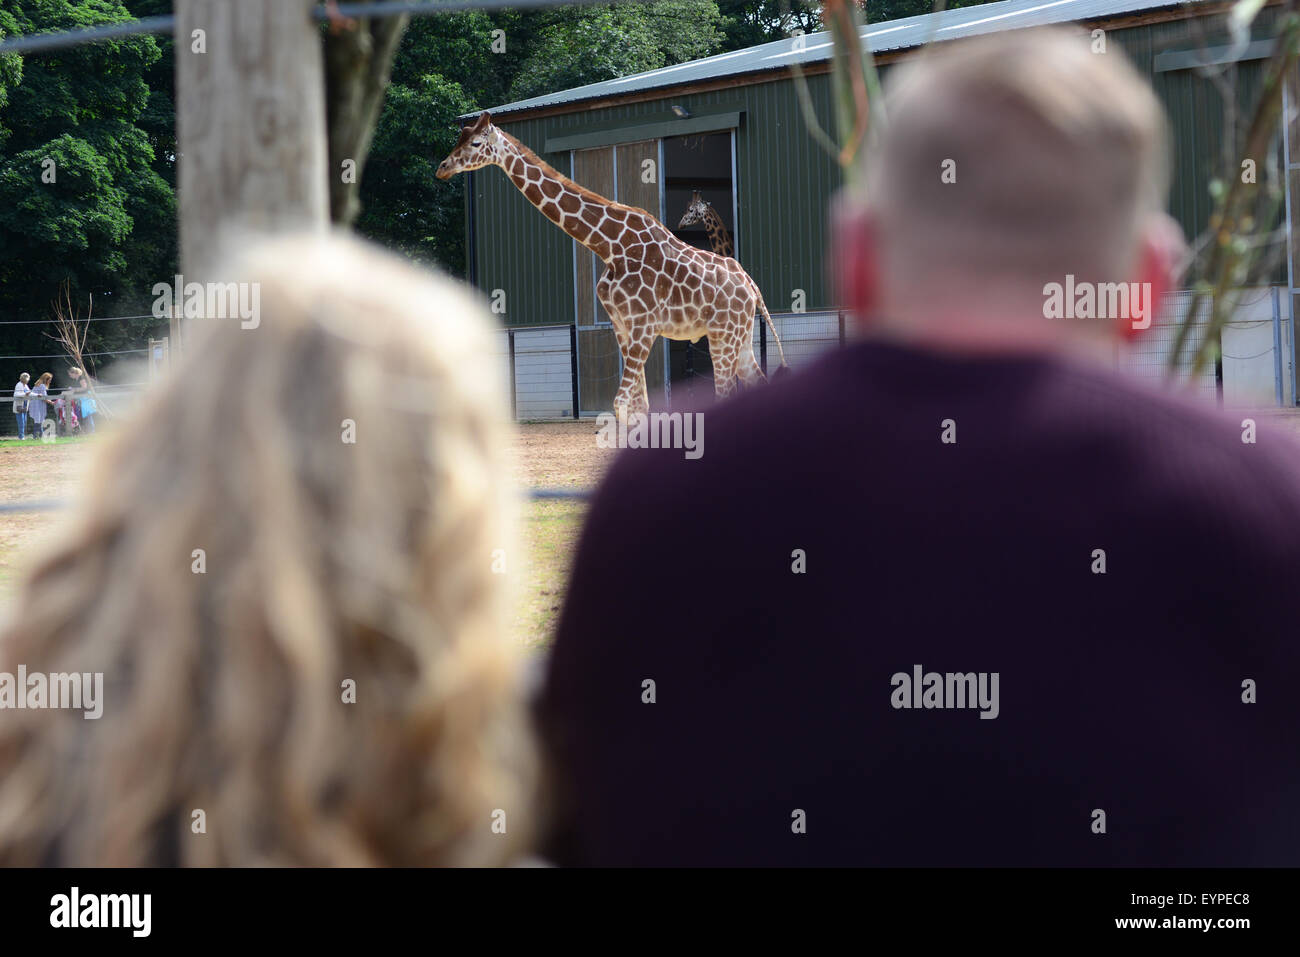 Ai visitatori la visione di una giraffa a Yorkshire Wildlife Park, Doncaster, South Yorkshire, Regno Unito. Immagine: Scott Bairstow/Alamy Foto Stock